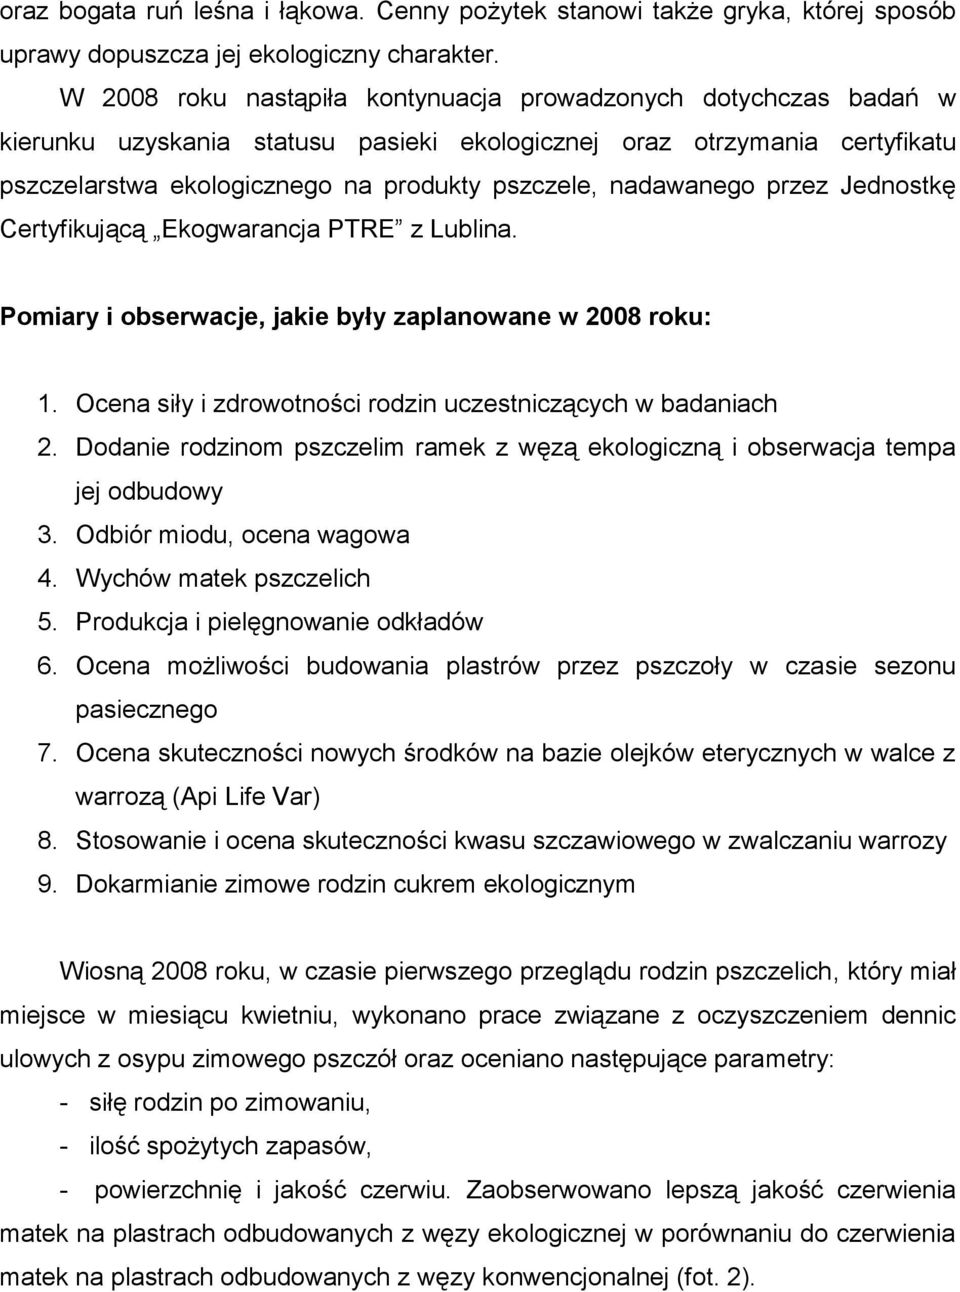 nadawanego przez Jednostkę Certyfikującą Ekogwarancja PTRE z Lublina. Pomiary i obserwacje, jakie były zaplanowane w 2008 roku: 1. Ocena siły i zdrowotności rodzin uczestniczących w badaniach 2.